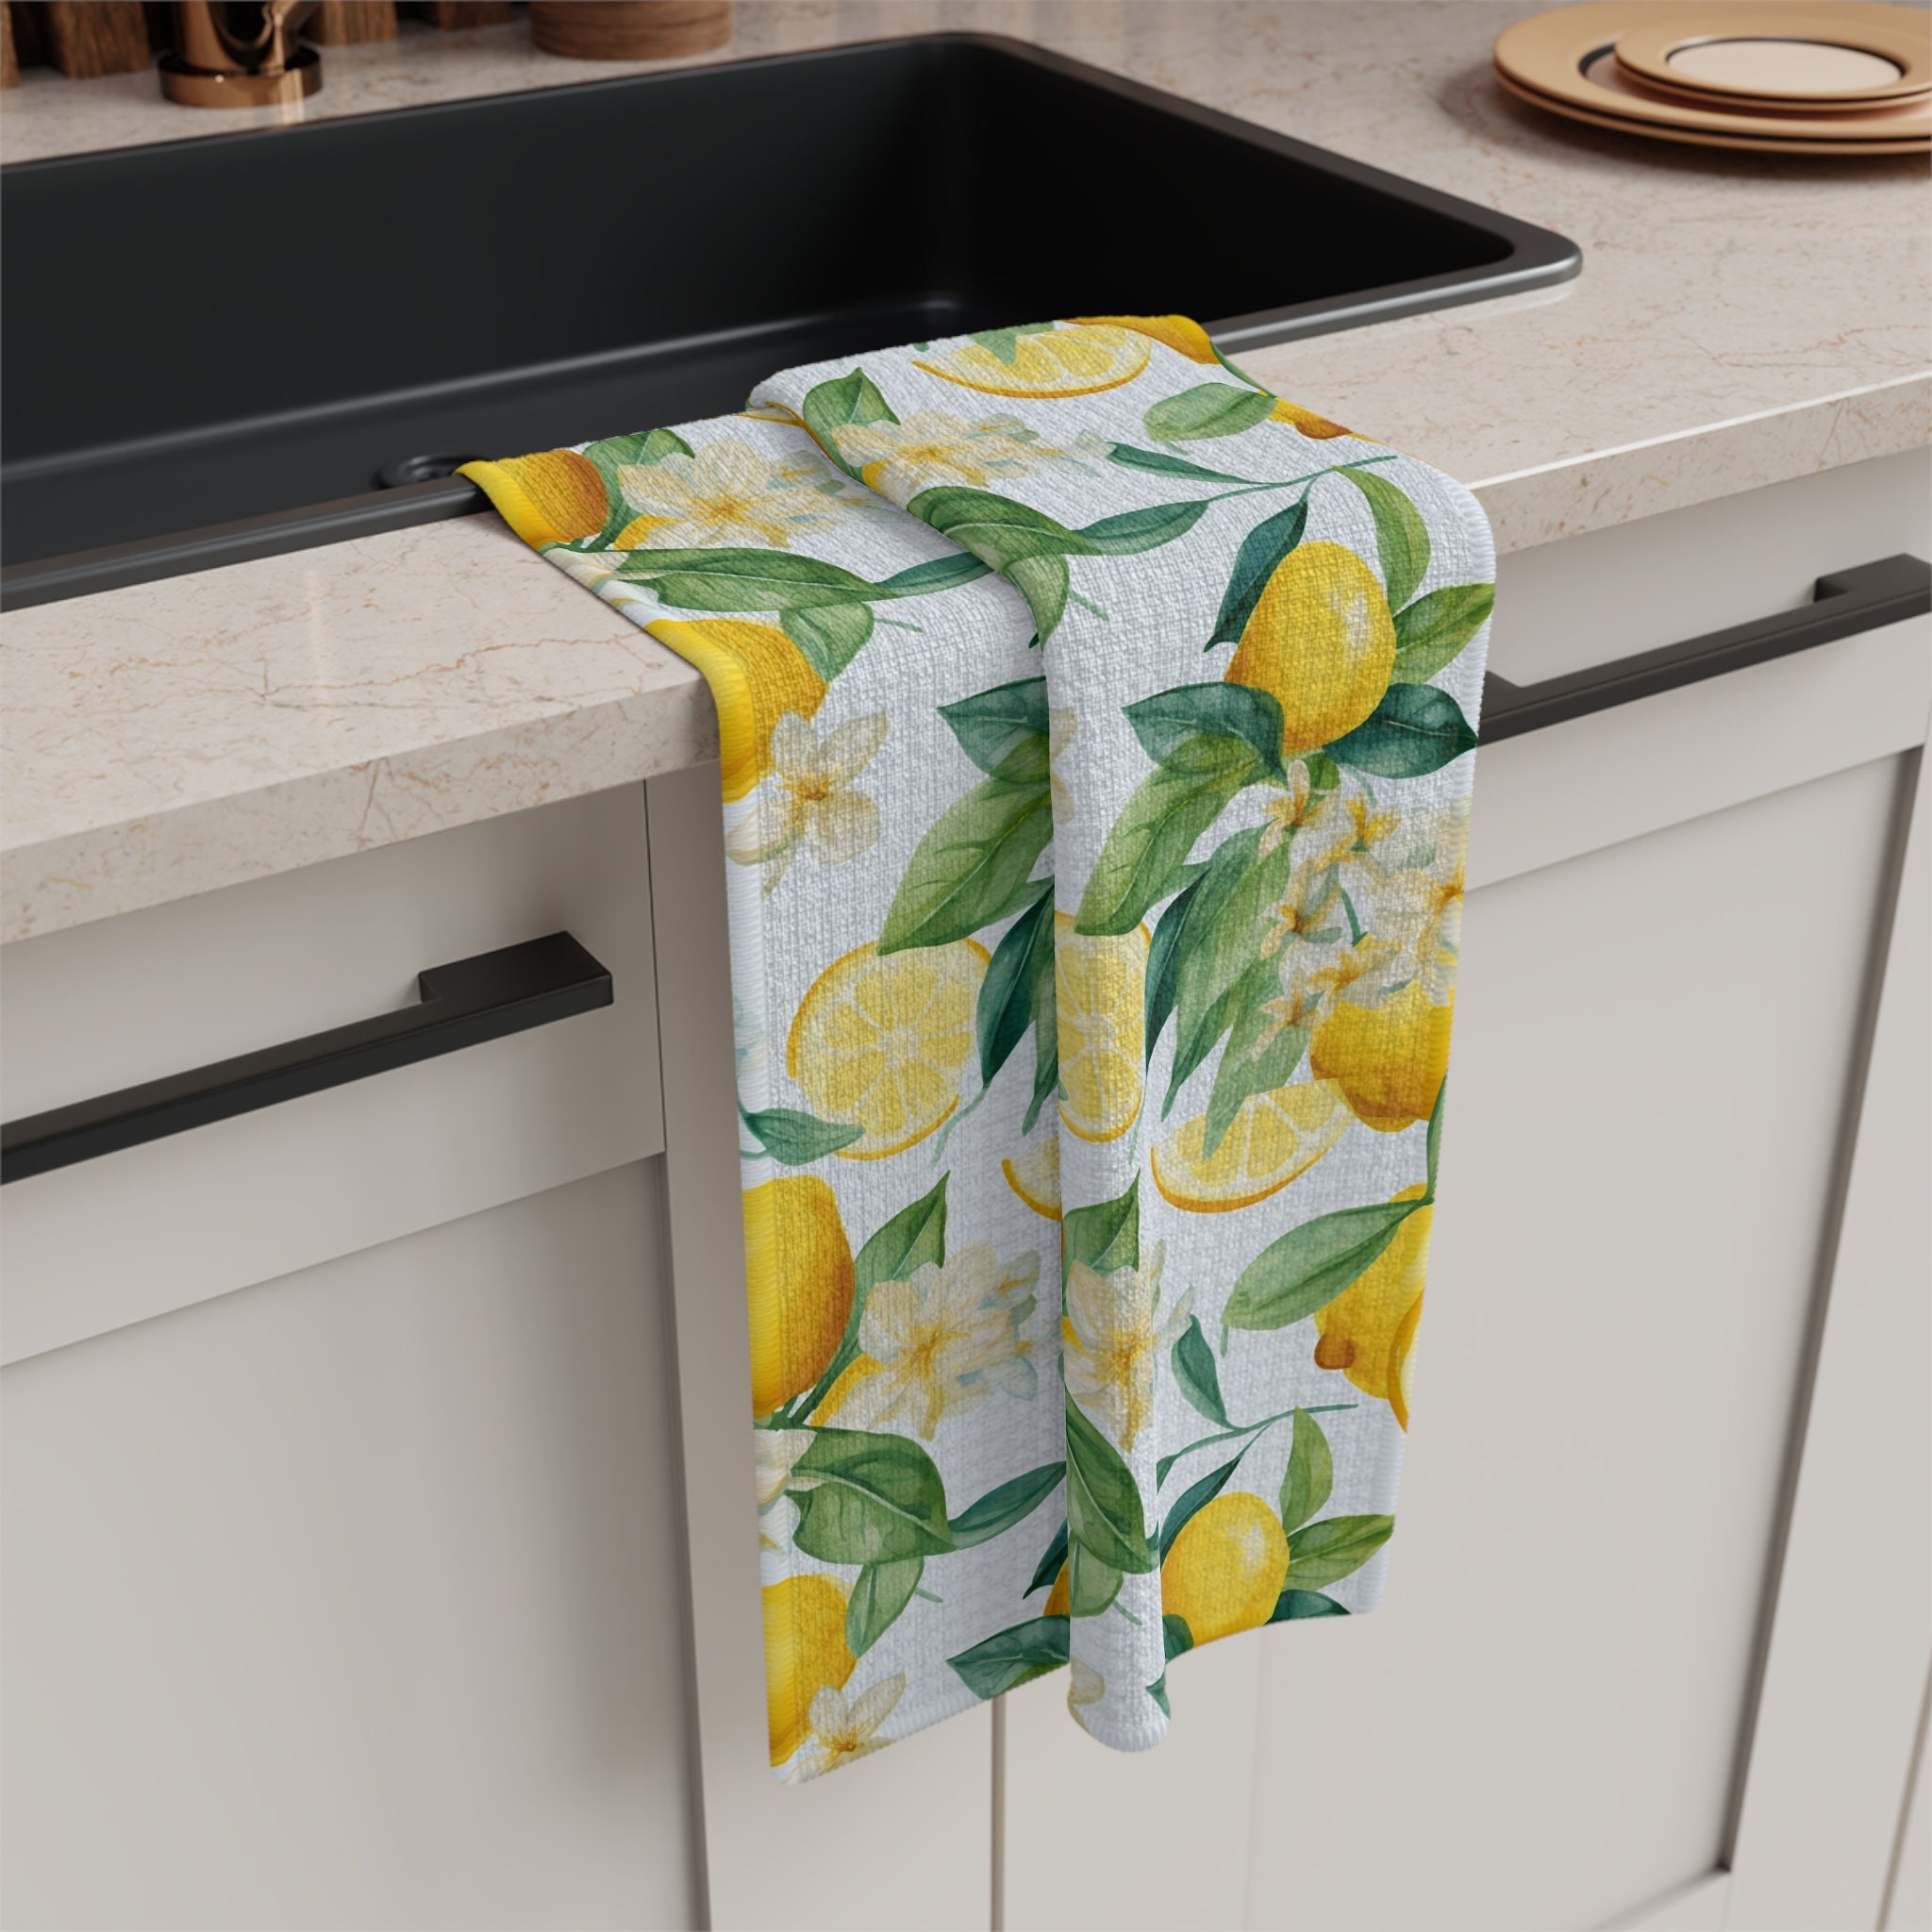 KOALAND Flour Sack Towels, Set of 3 Oversized Tea Towels for Kitchen with  Printed Lemon Designs, 100-percent Cotton, Cute Kitchen Towel Set, Lemon